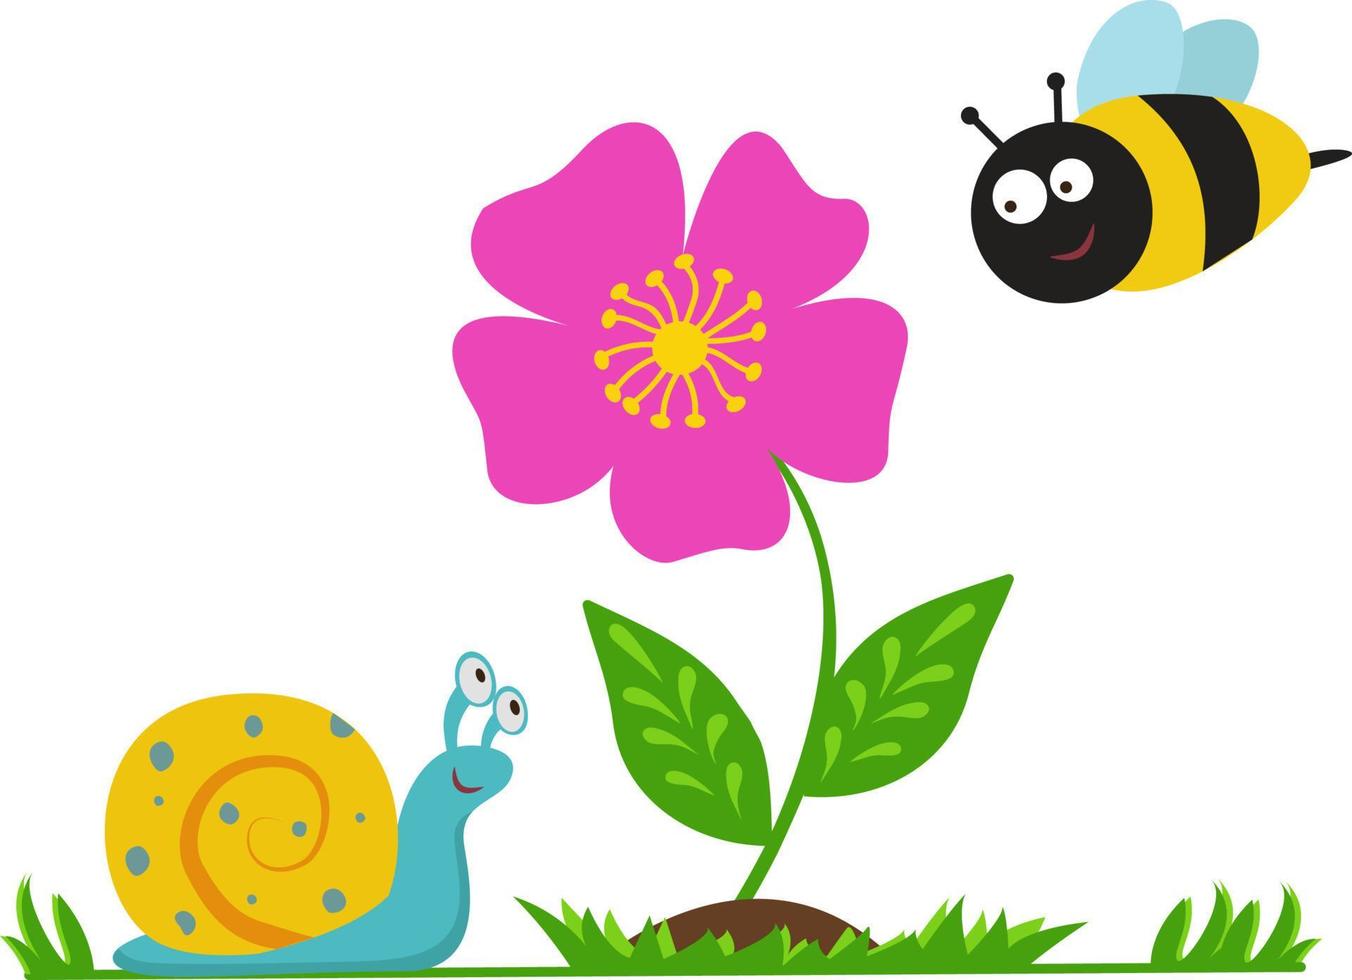 ilustración vectorial con una flor, una abeja y un caracol. linda ilustración infantil. para libros y revistas infantiles, diseño de habitaciones infantiles, marketing, publicidad, aplicaciones web y diseño. vector